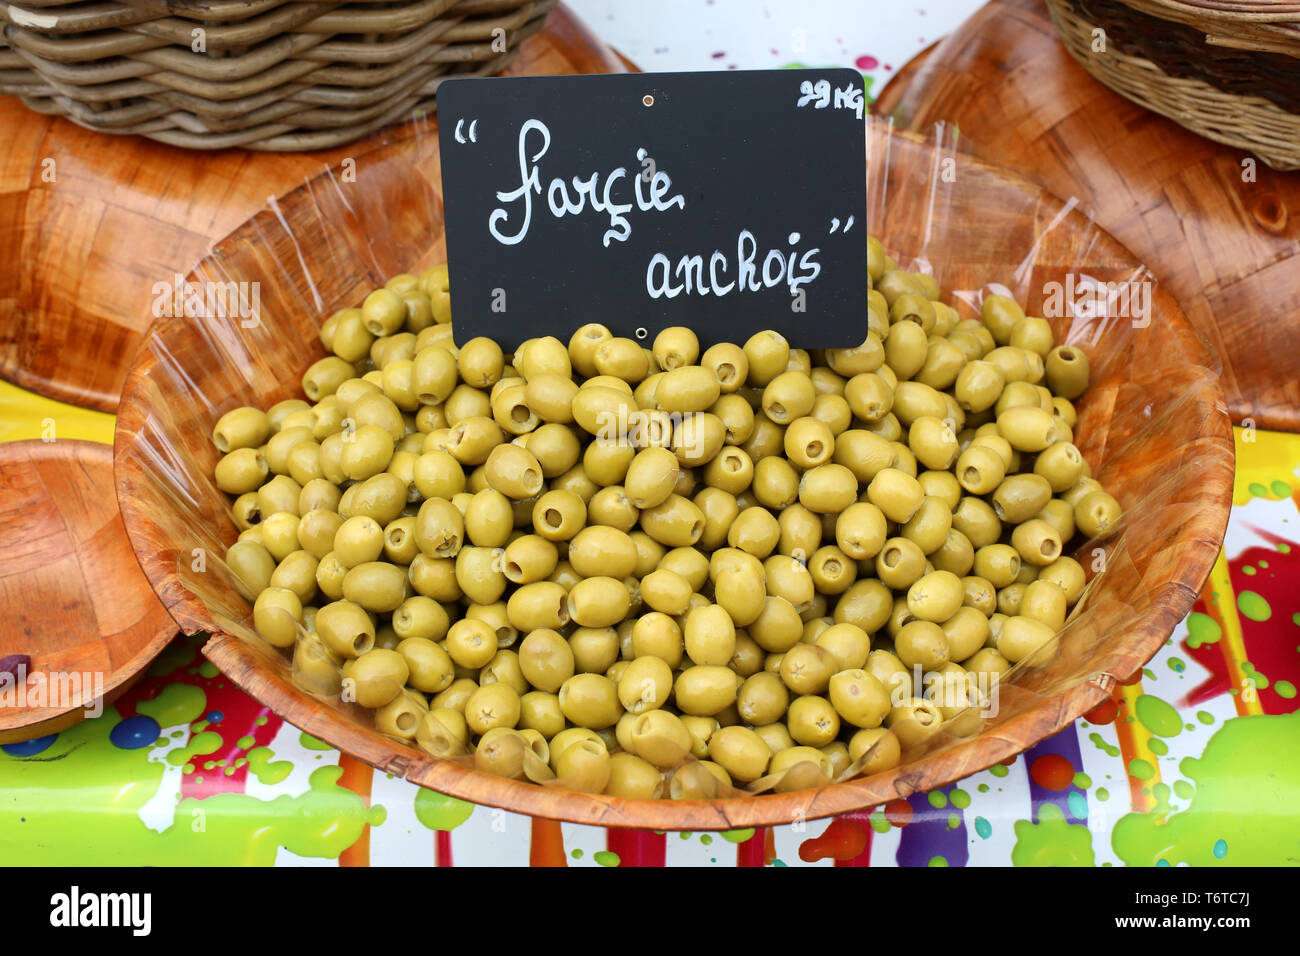 Vente d'olive vertes farcies ˆ l'anchois sur onu marché locale. Foto Stock